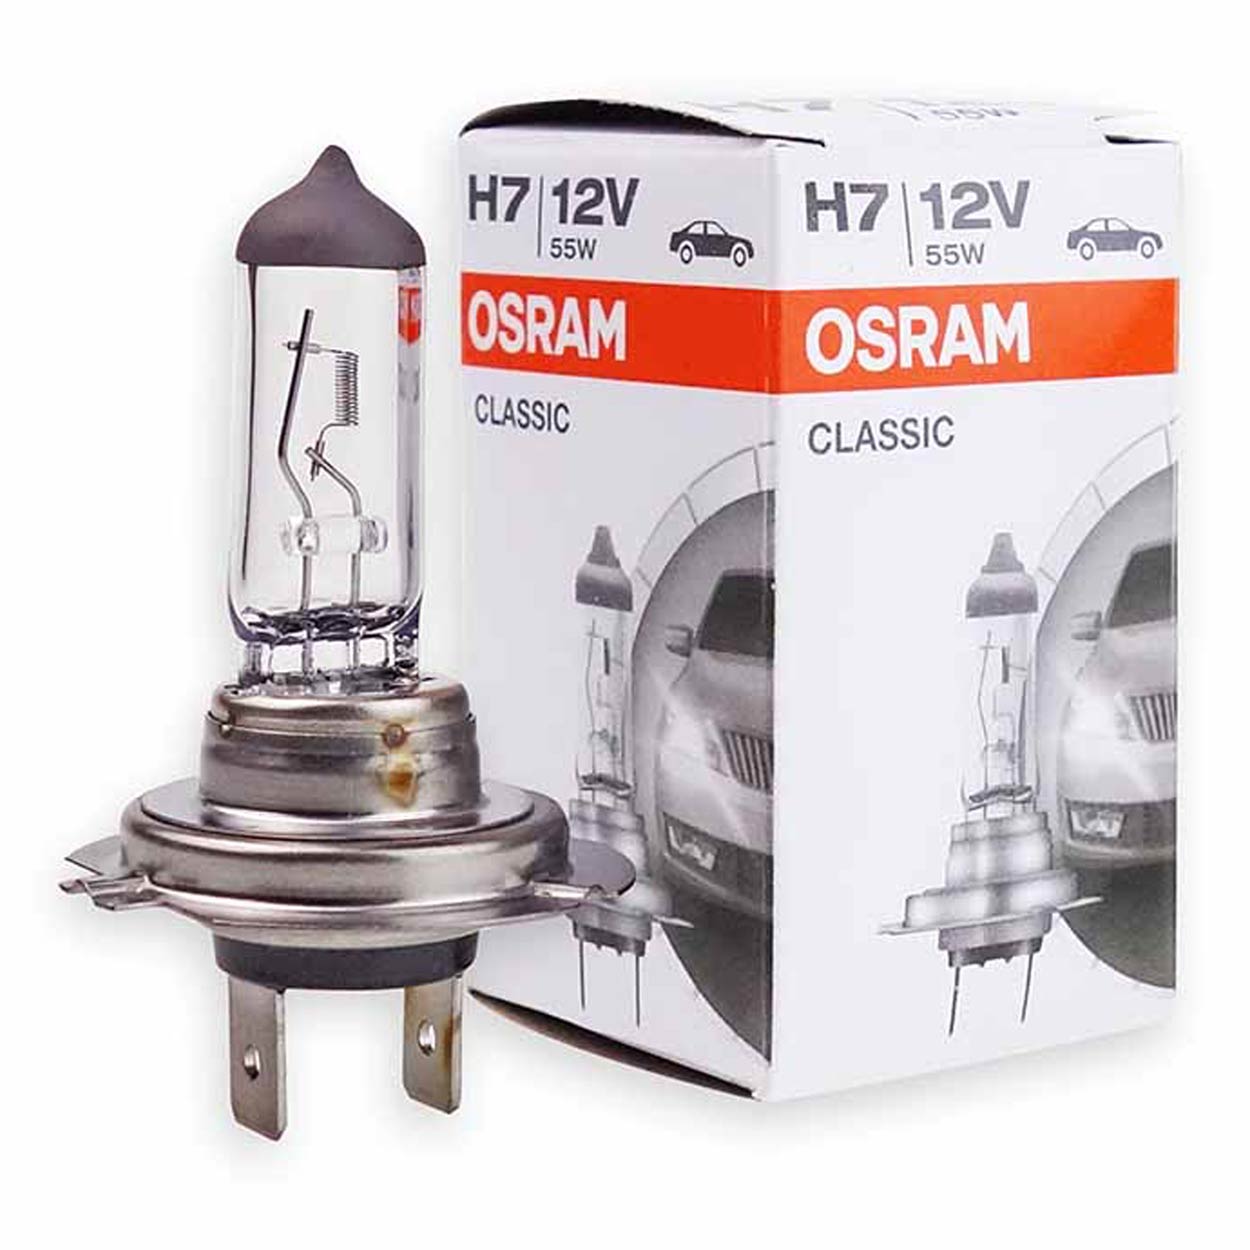 Osram autokoplamplamp / 12v 55w H7 / Meest populair - Lampen - Lampen voor auto's 12v - spo-cs-uitgeschakeld - spo-standaard - spo